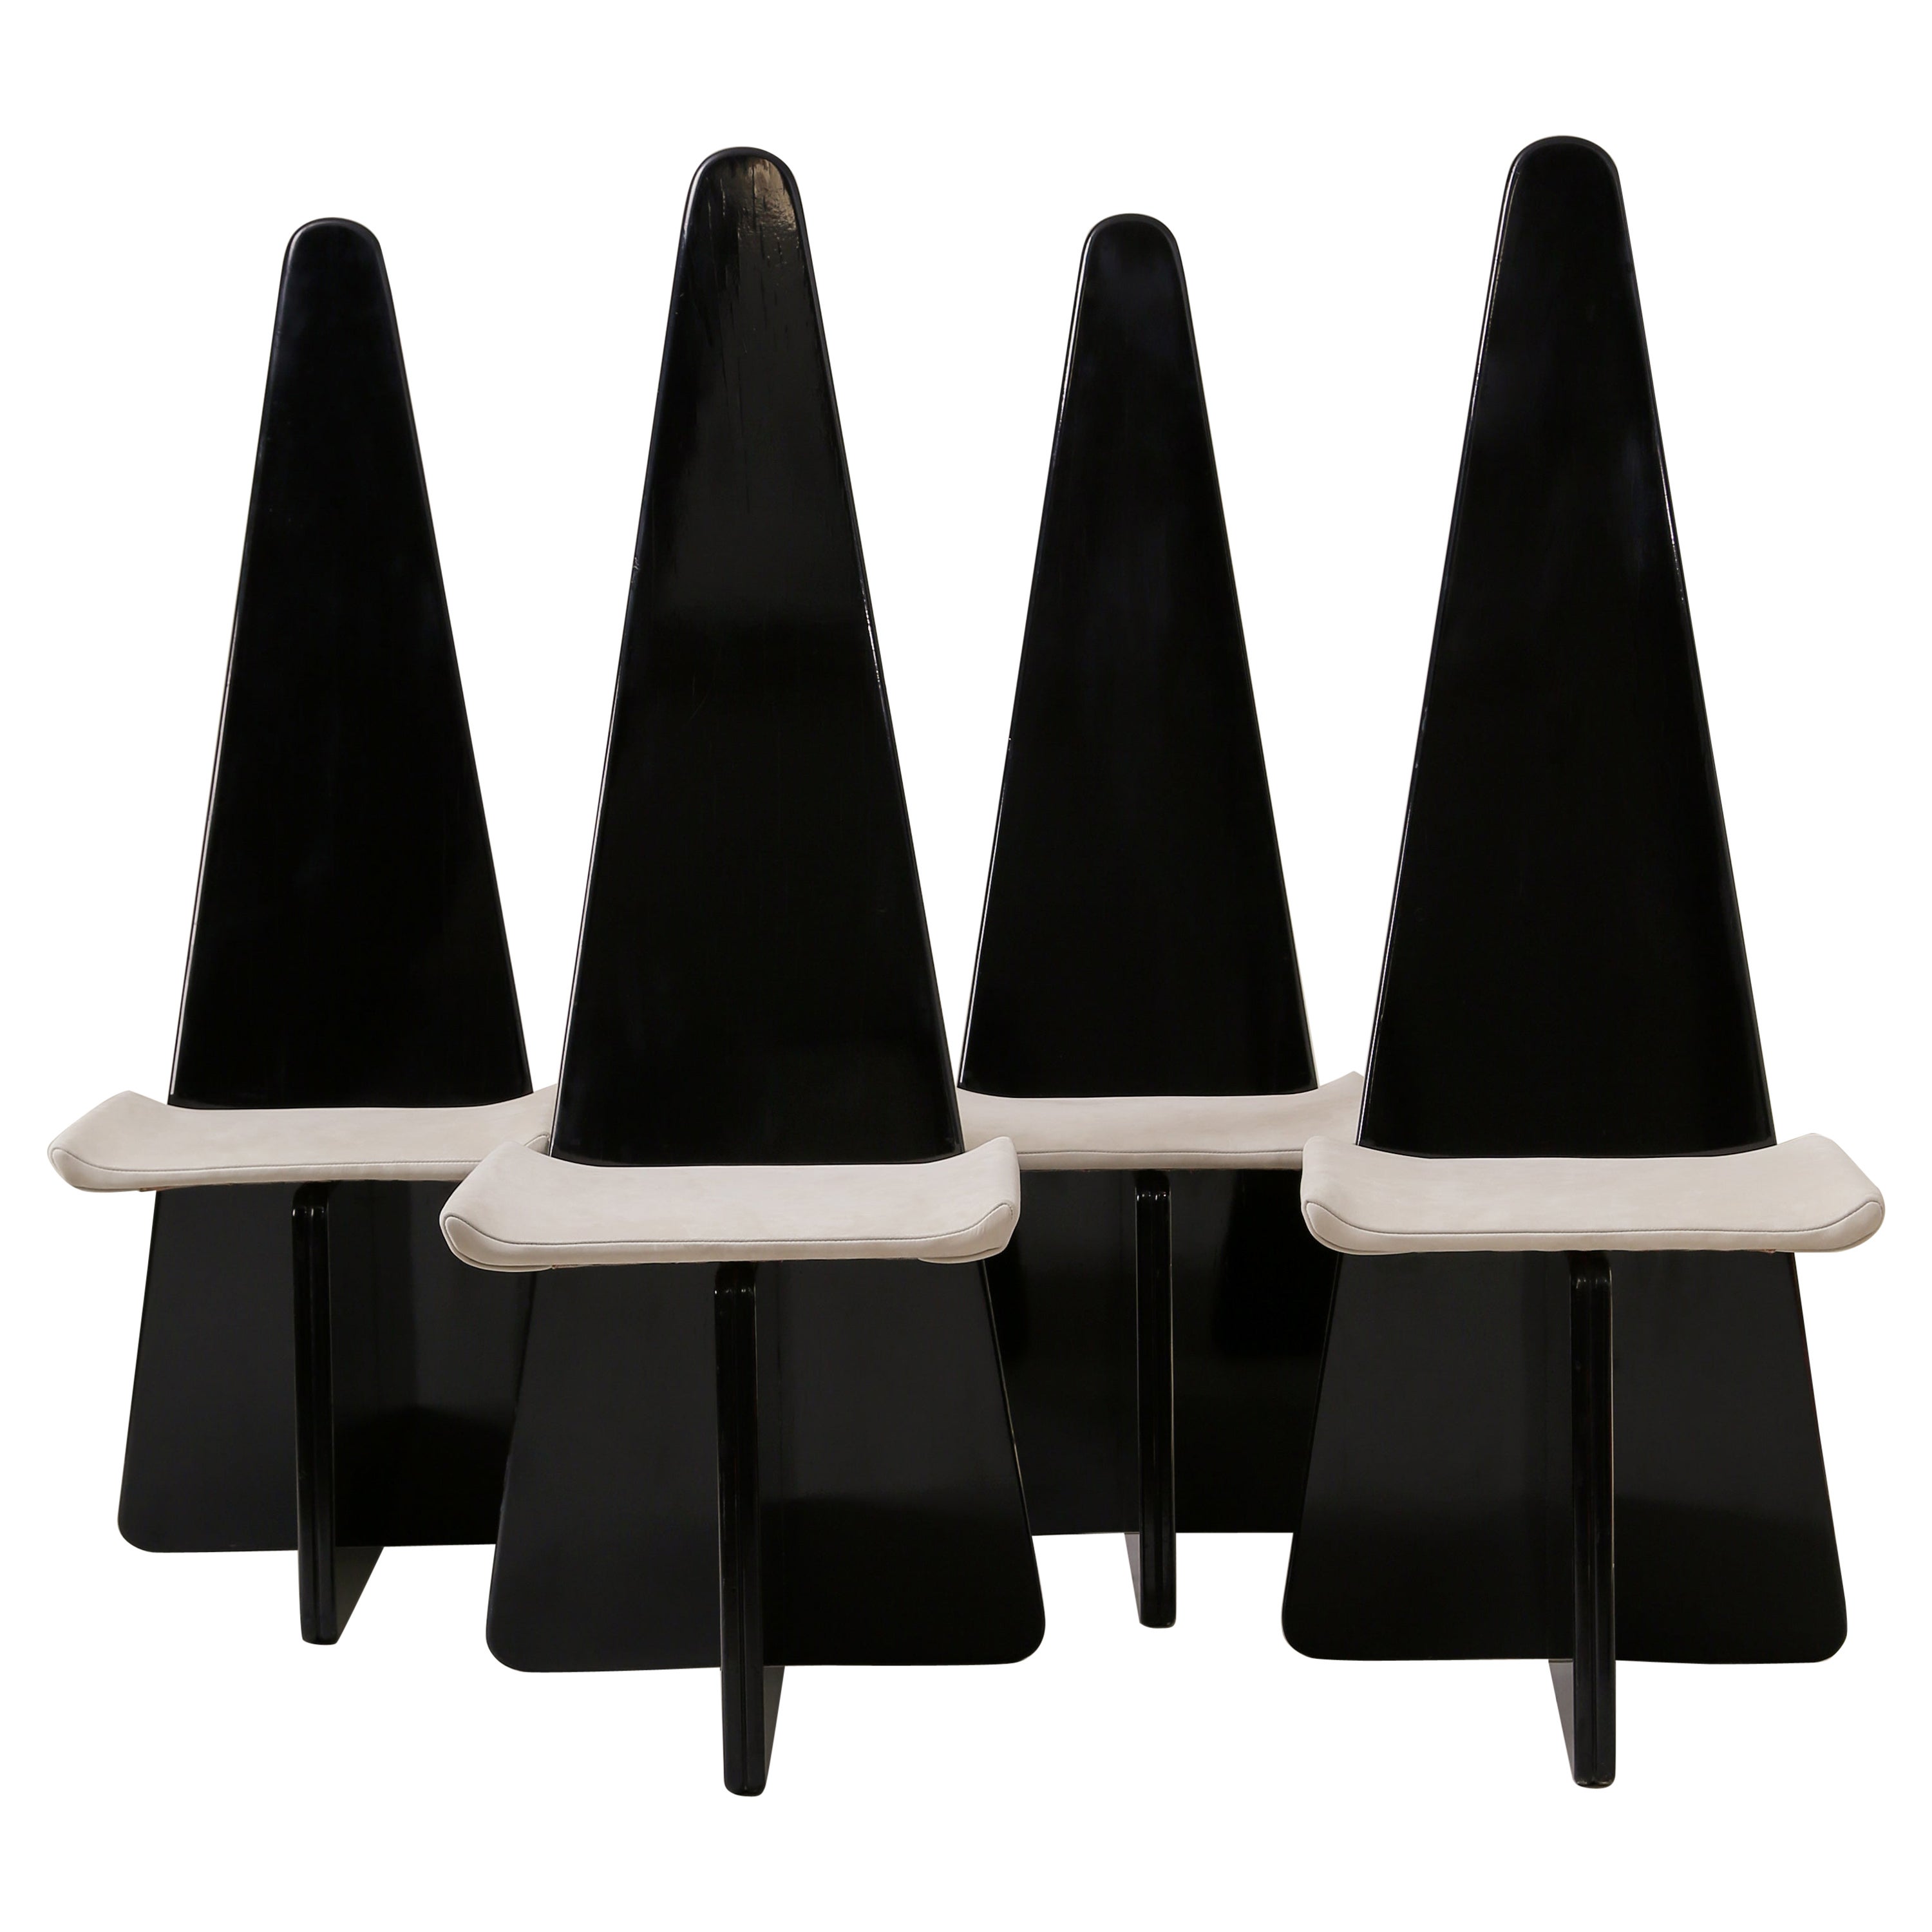 Chaise de salle à manger triangulaire moderniste - Lot de 4